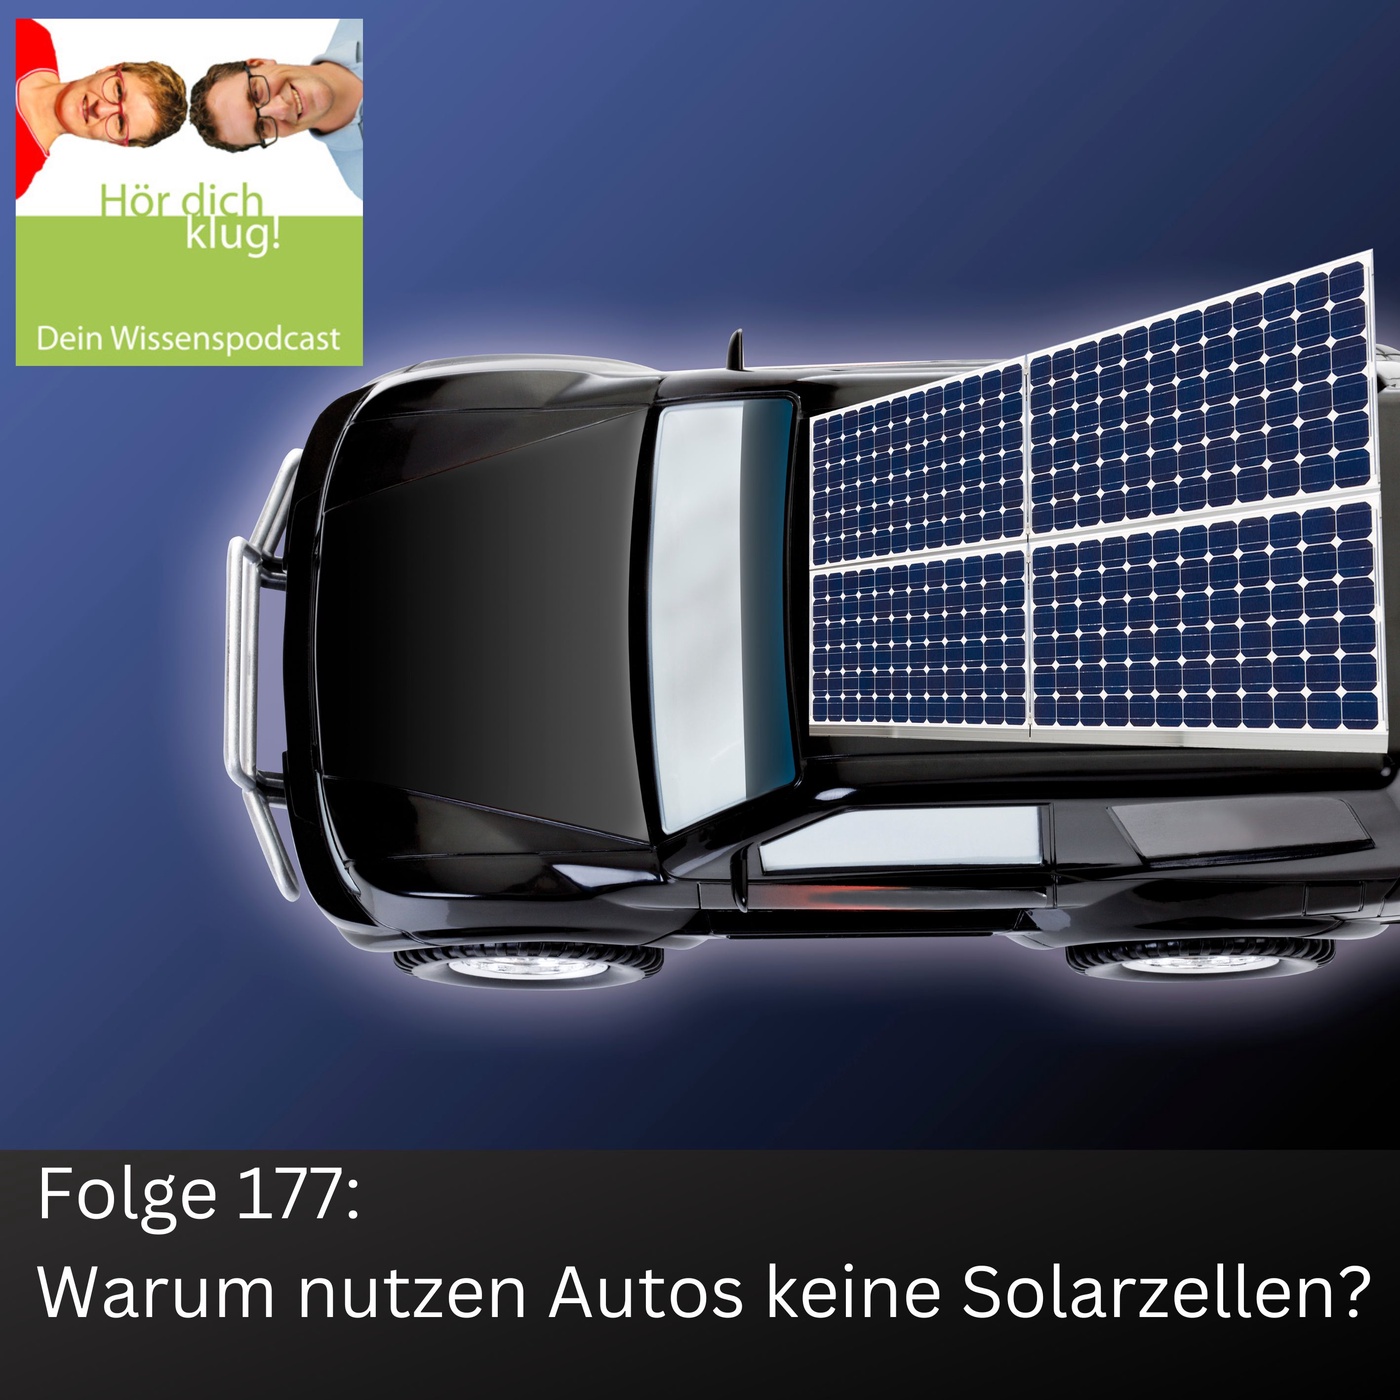 Warum nutzen Autos keine Solarzellen?